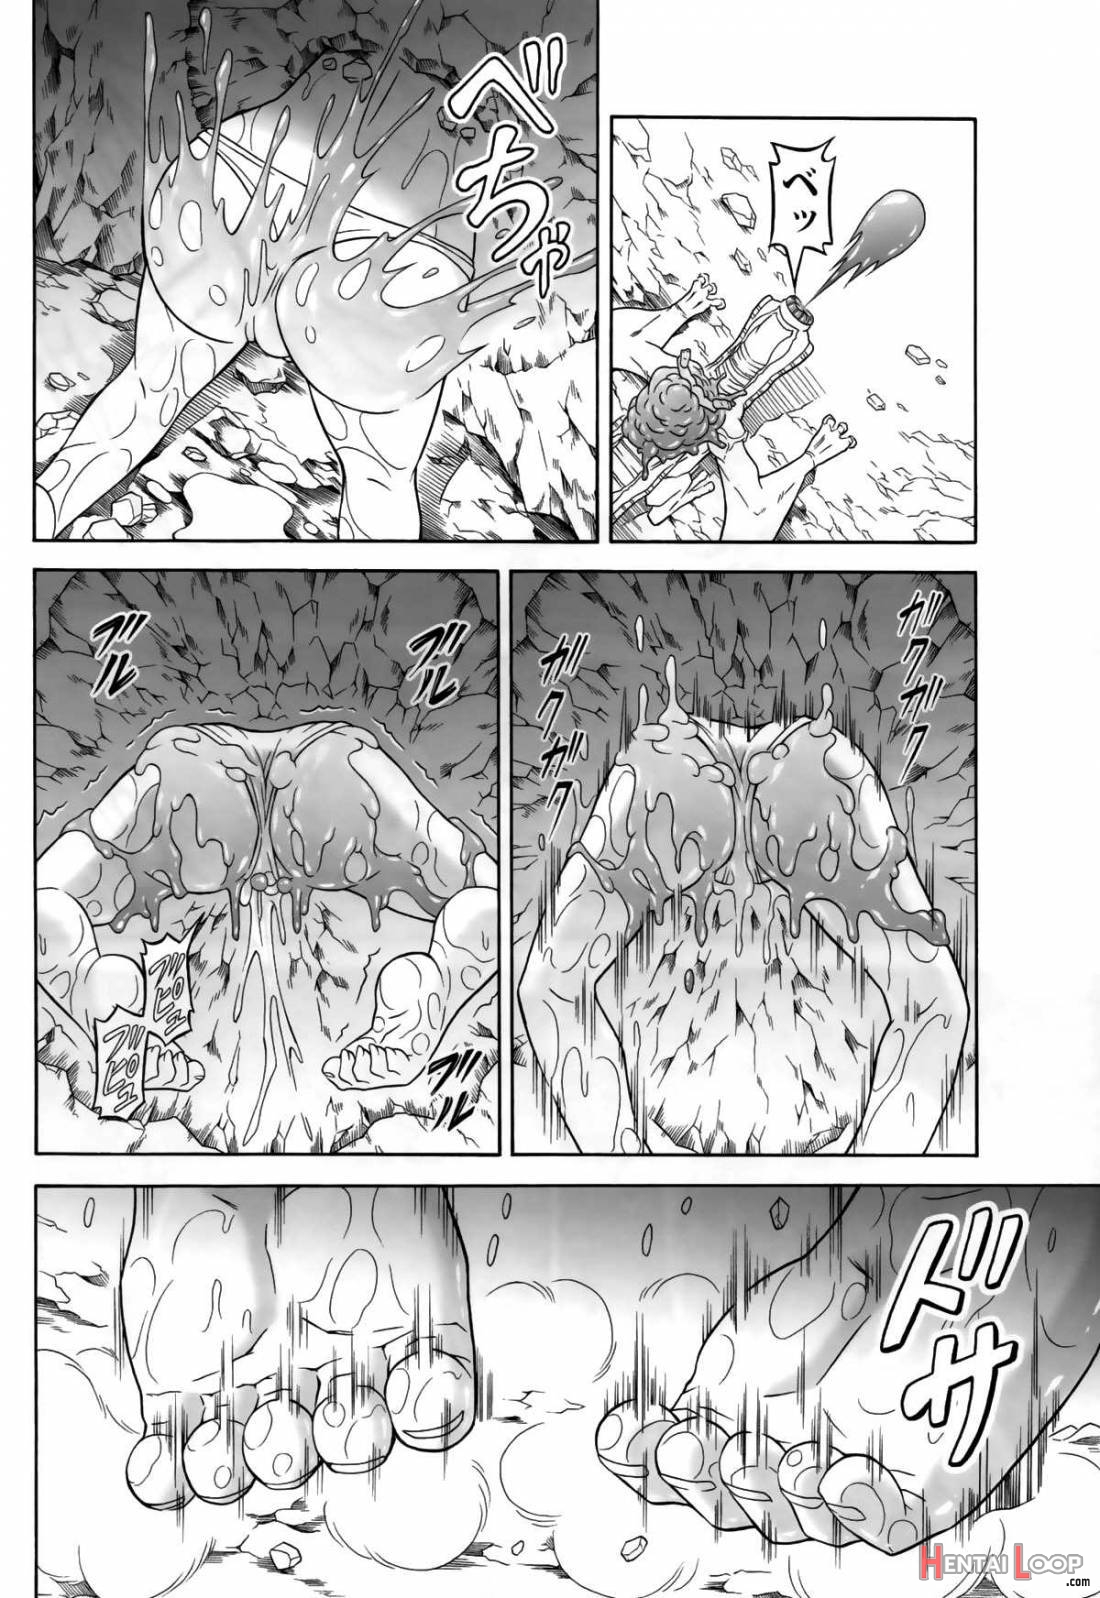 Solo Hunter No Seitai 4: The Second Part page 21